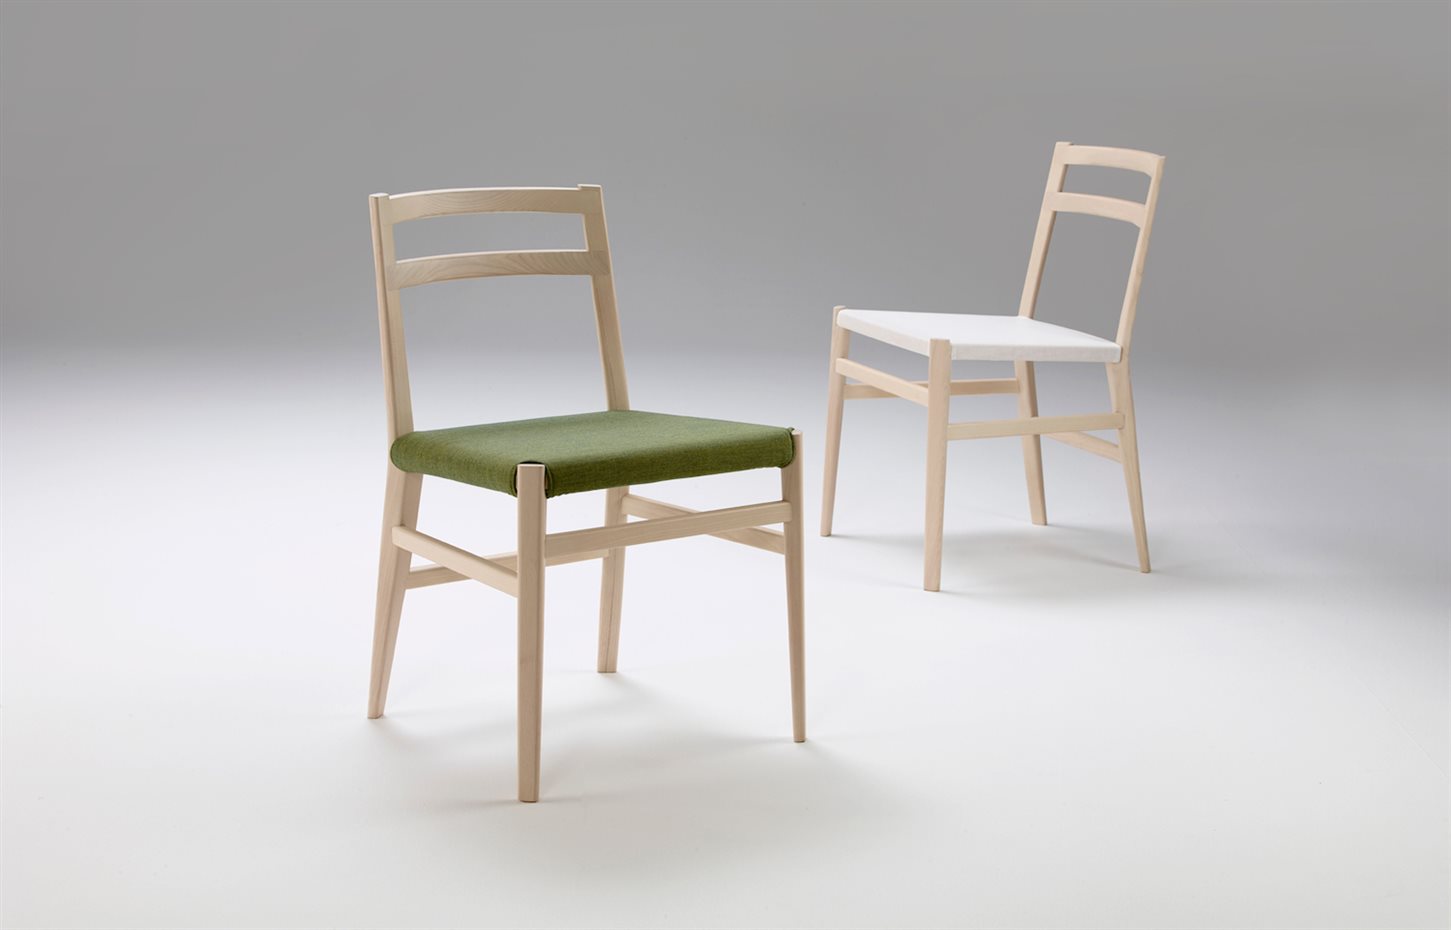 Offecct. Uno de sus proyectos junto a la firma sueca Offecct, es esta silla esencial, Haiku